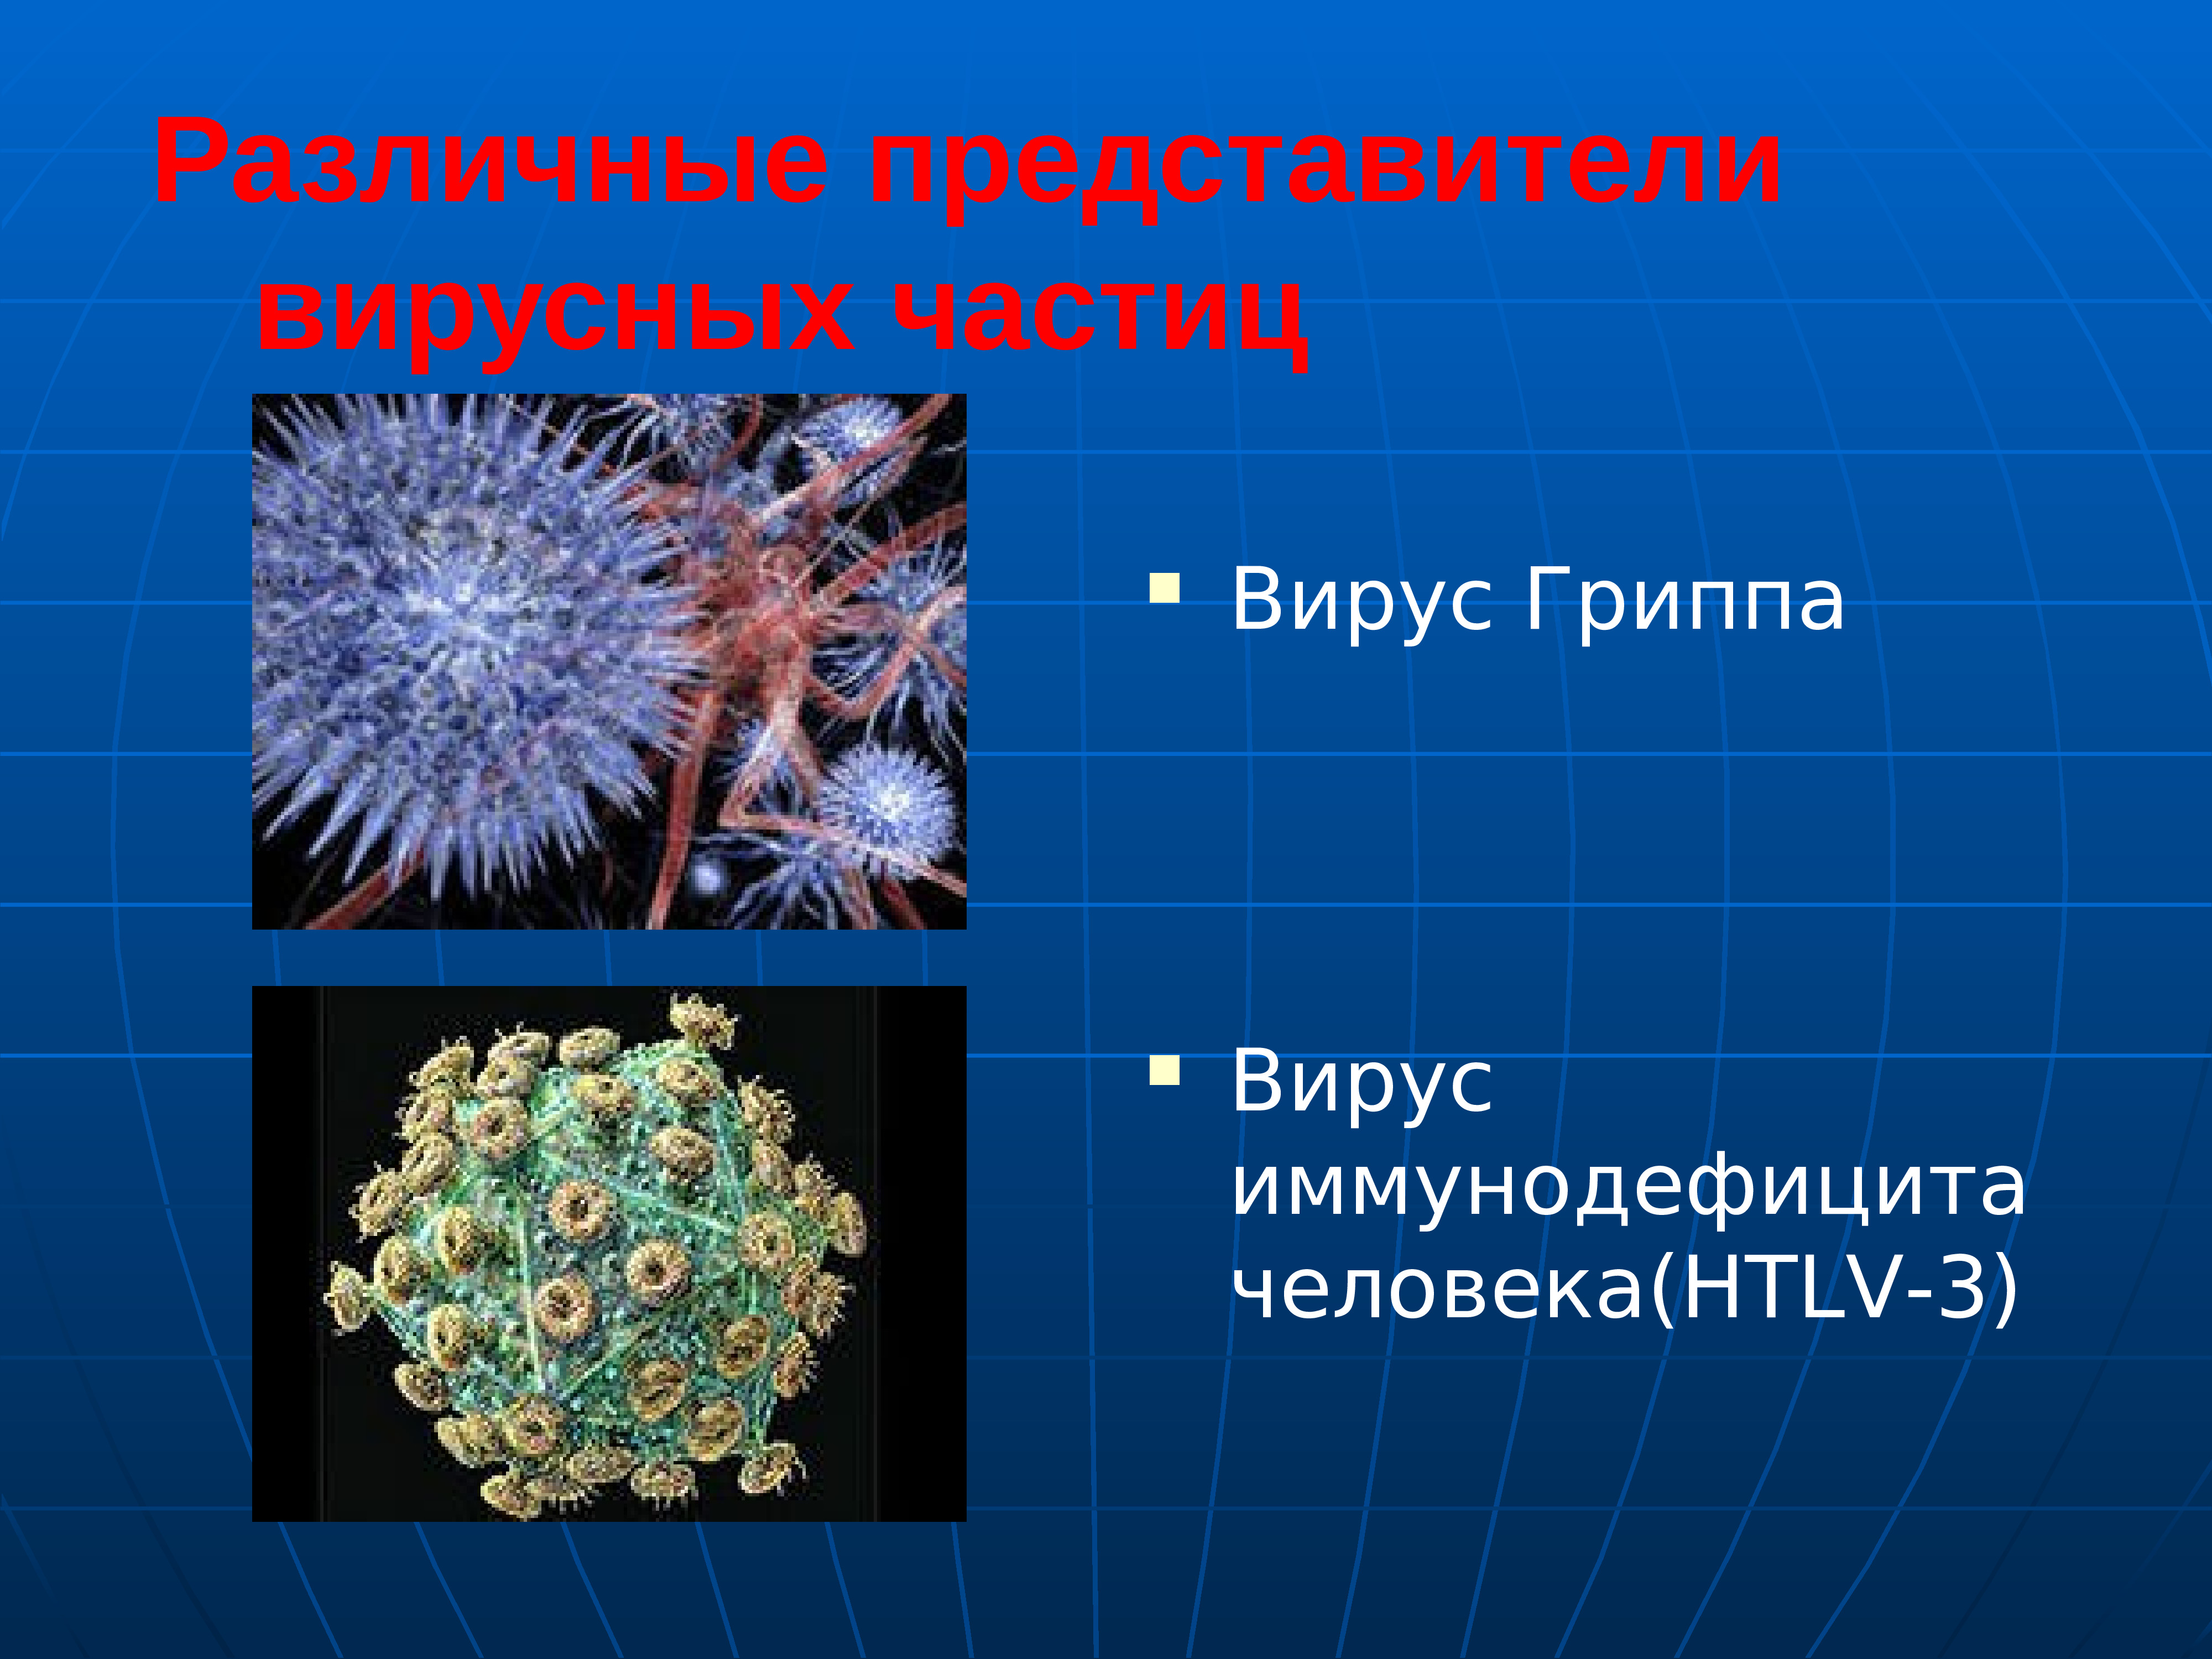 Вирусы примеры. Представители вирусов. Вирусы микробиология. Различные представители вирусных частиц. Вирусы презентация.